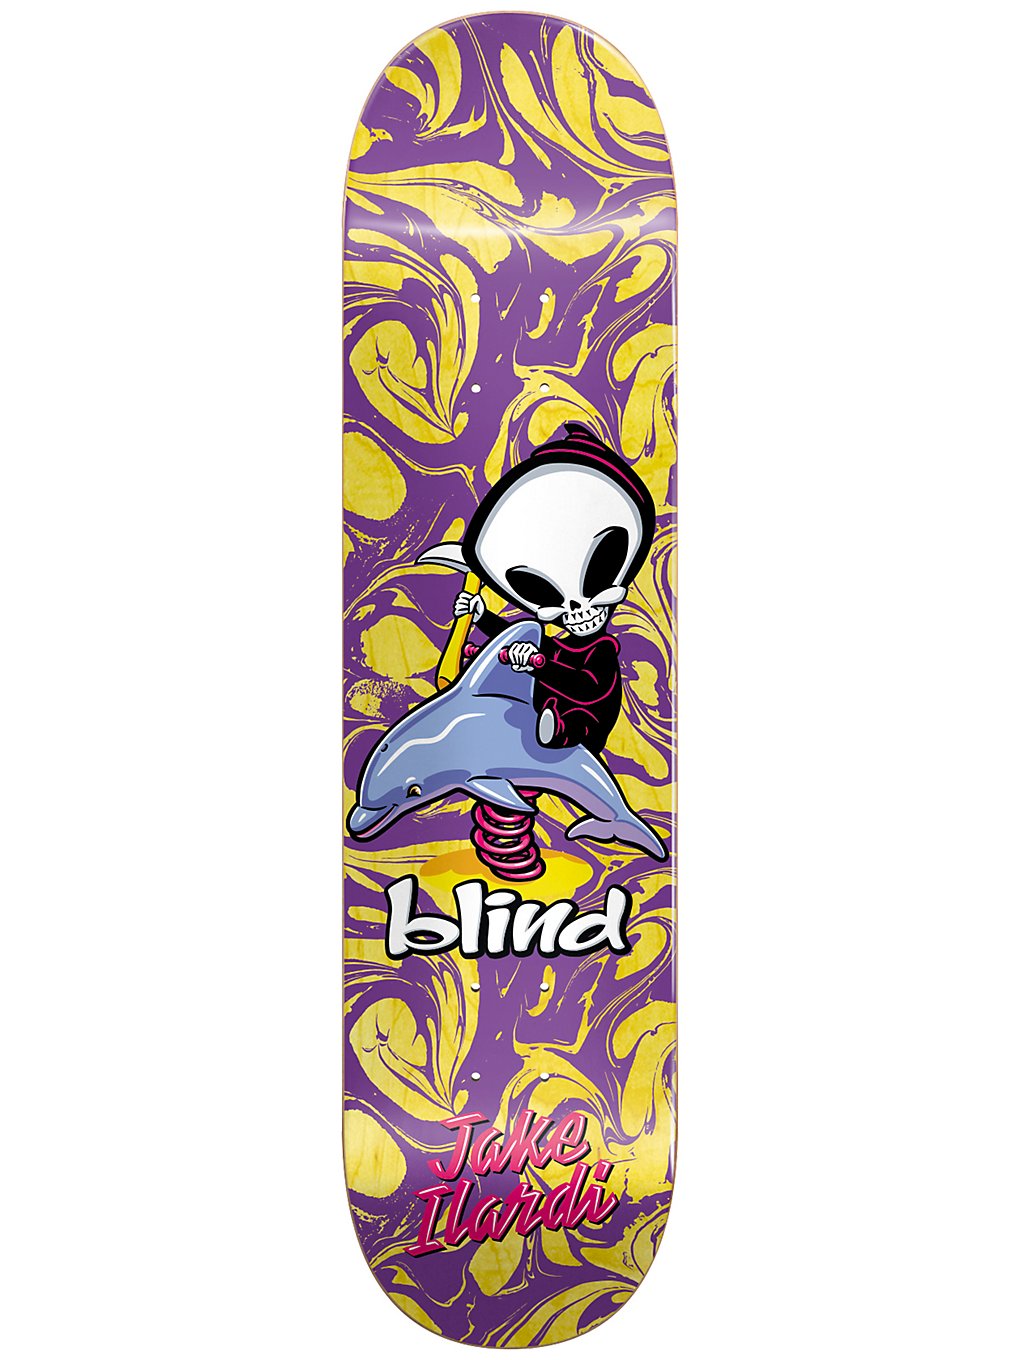 Blind Ilardi Reaper Ride R7 8.0 Skateboard Deck purple